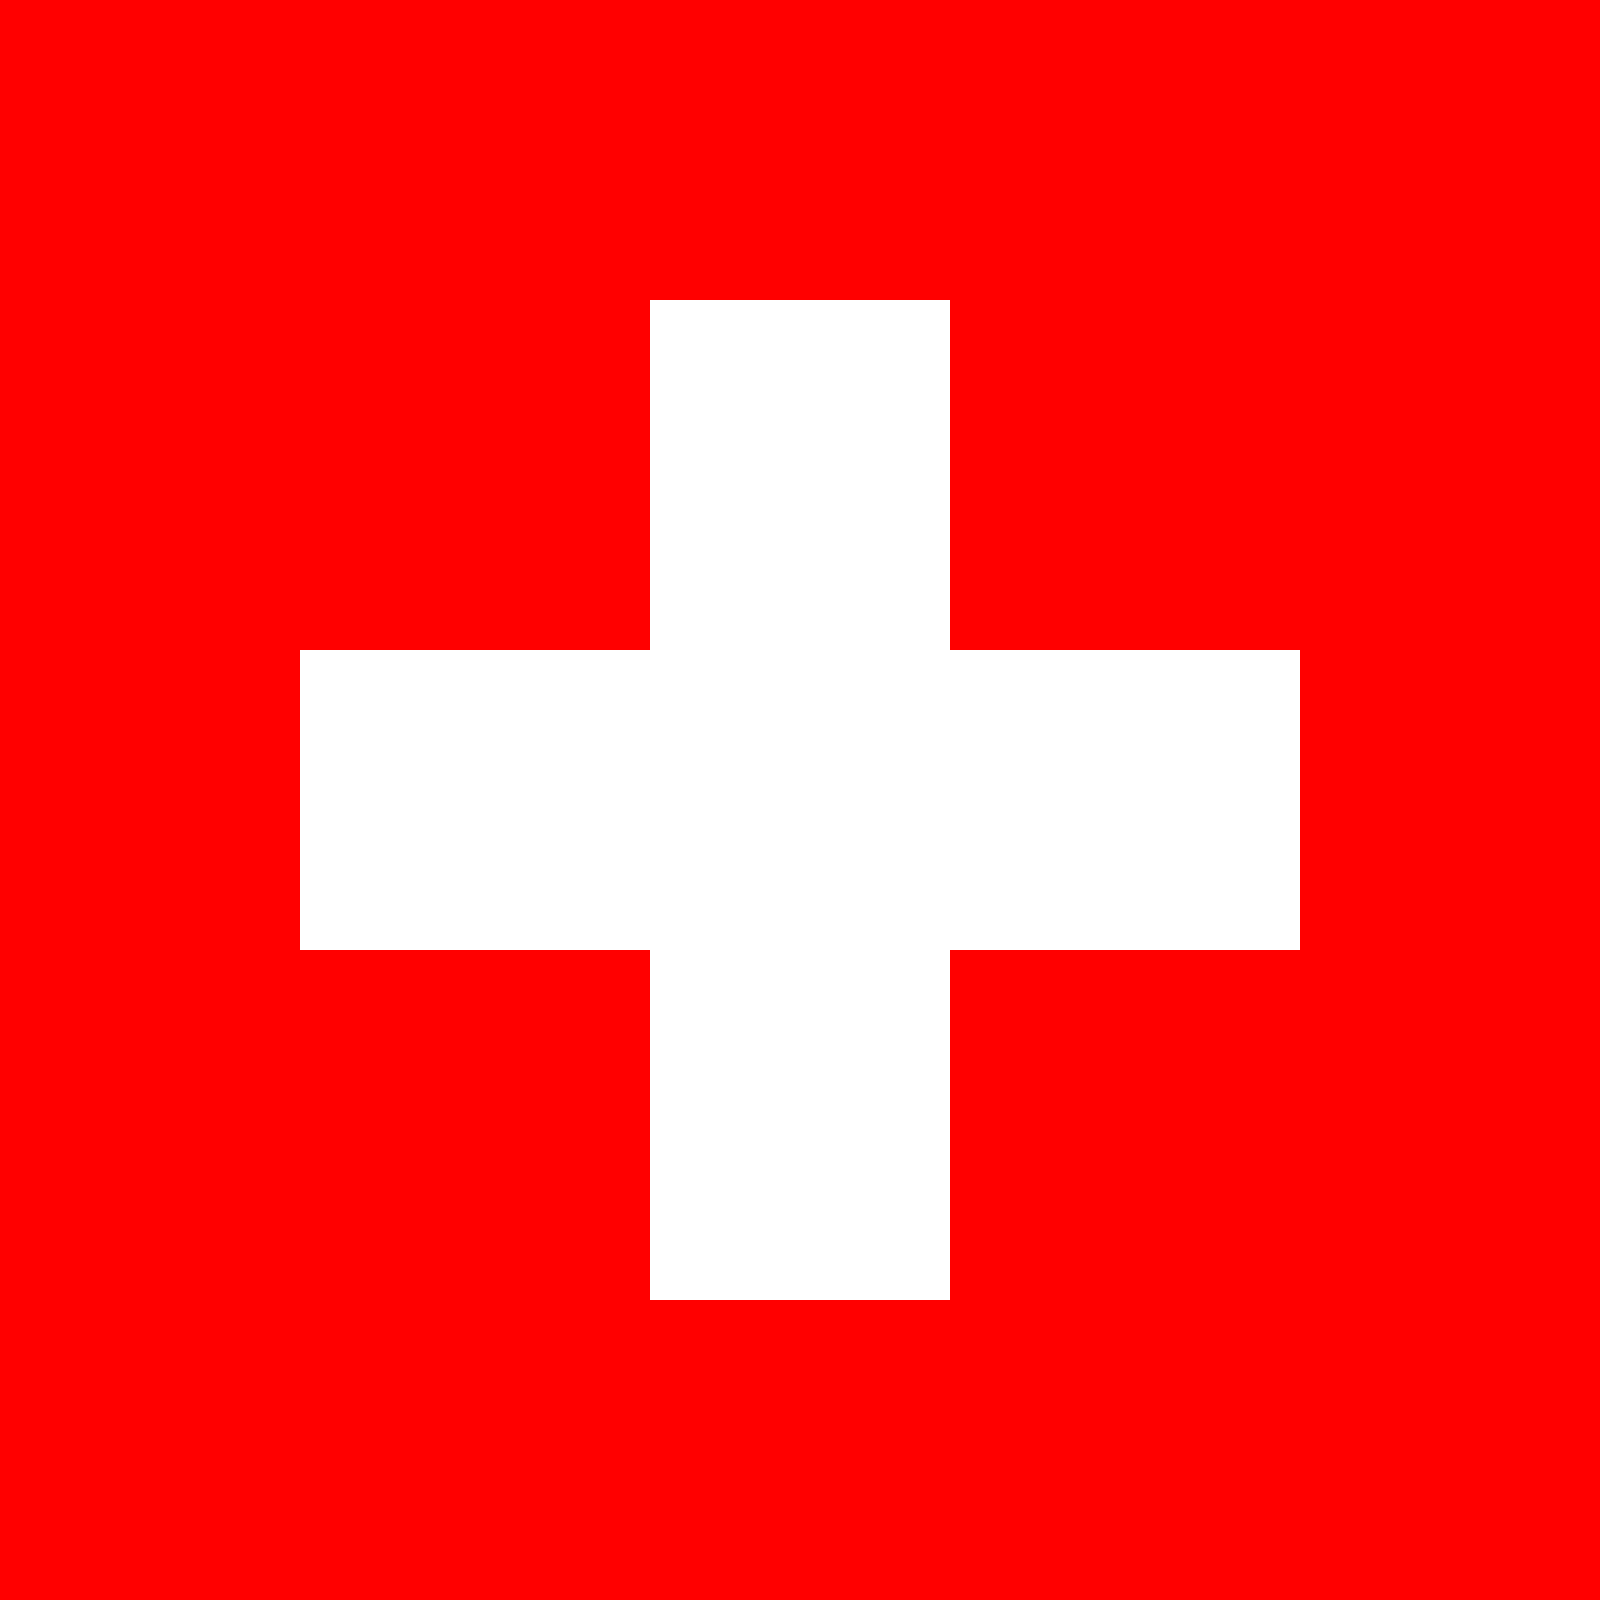 Free Switzerland Flag Documents: PDF, DOC, DOCX, HTML & More!